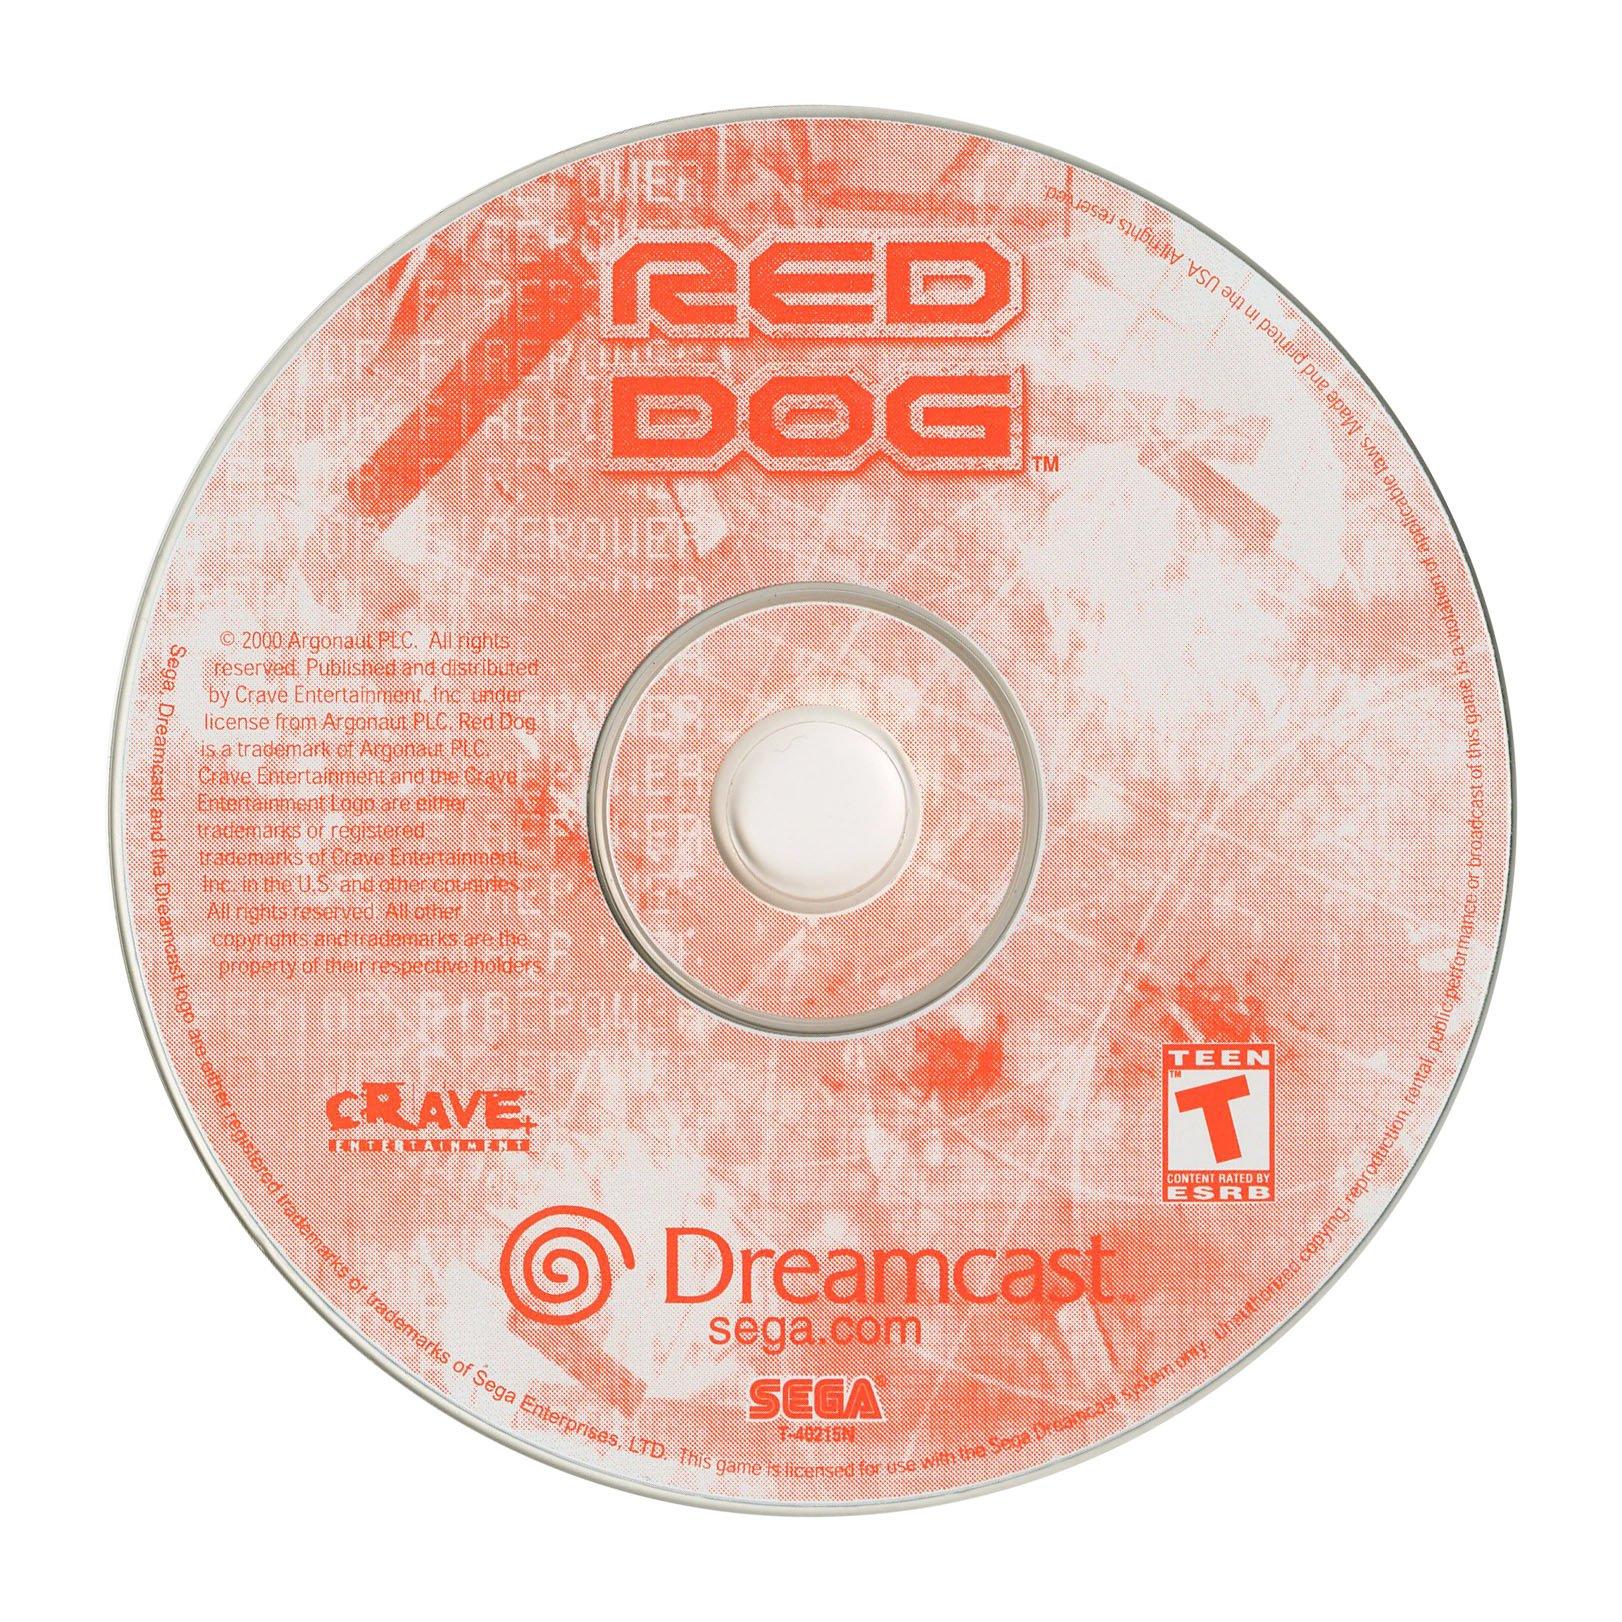 Red Dog: Superior Fire Power - Sega Dreamcast